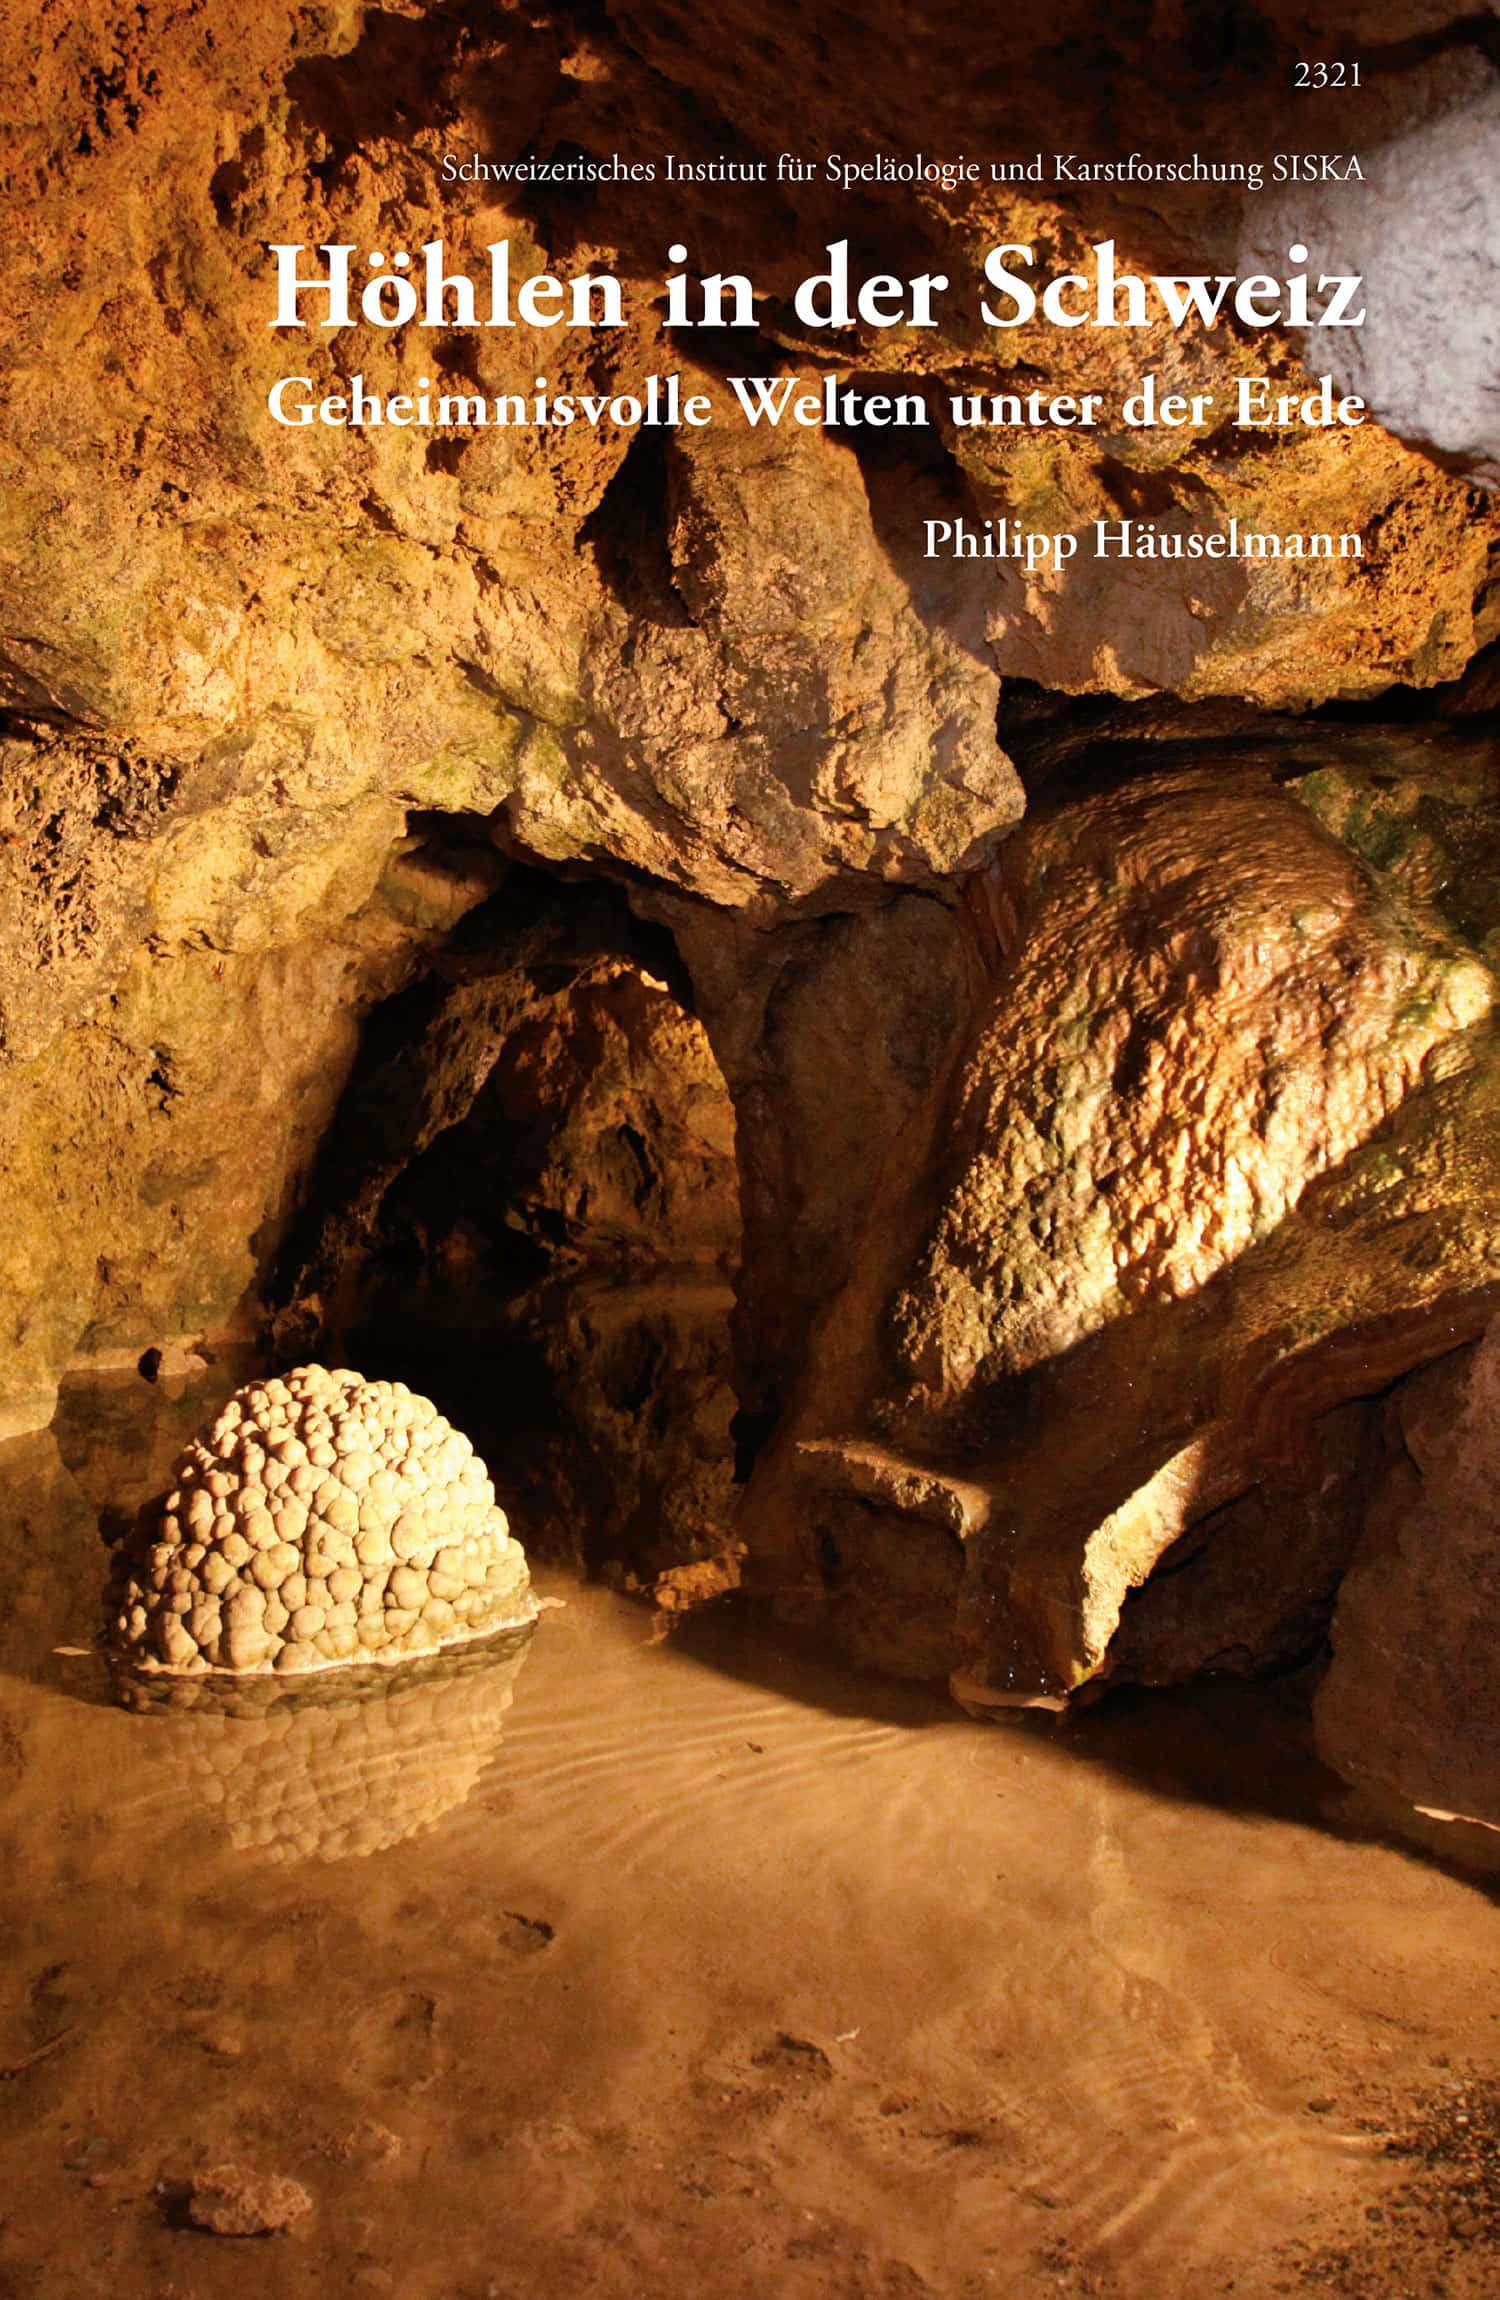 Hoehlen in der Schweiz – Geheimnisvolle Welten unter der Erde, ein Sachbuch von Philipp Haeuselmann, SJW Verlag, Schweiz 